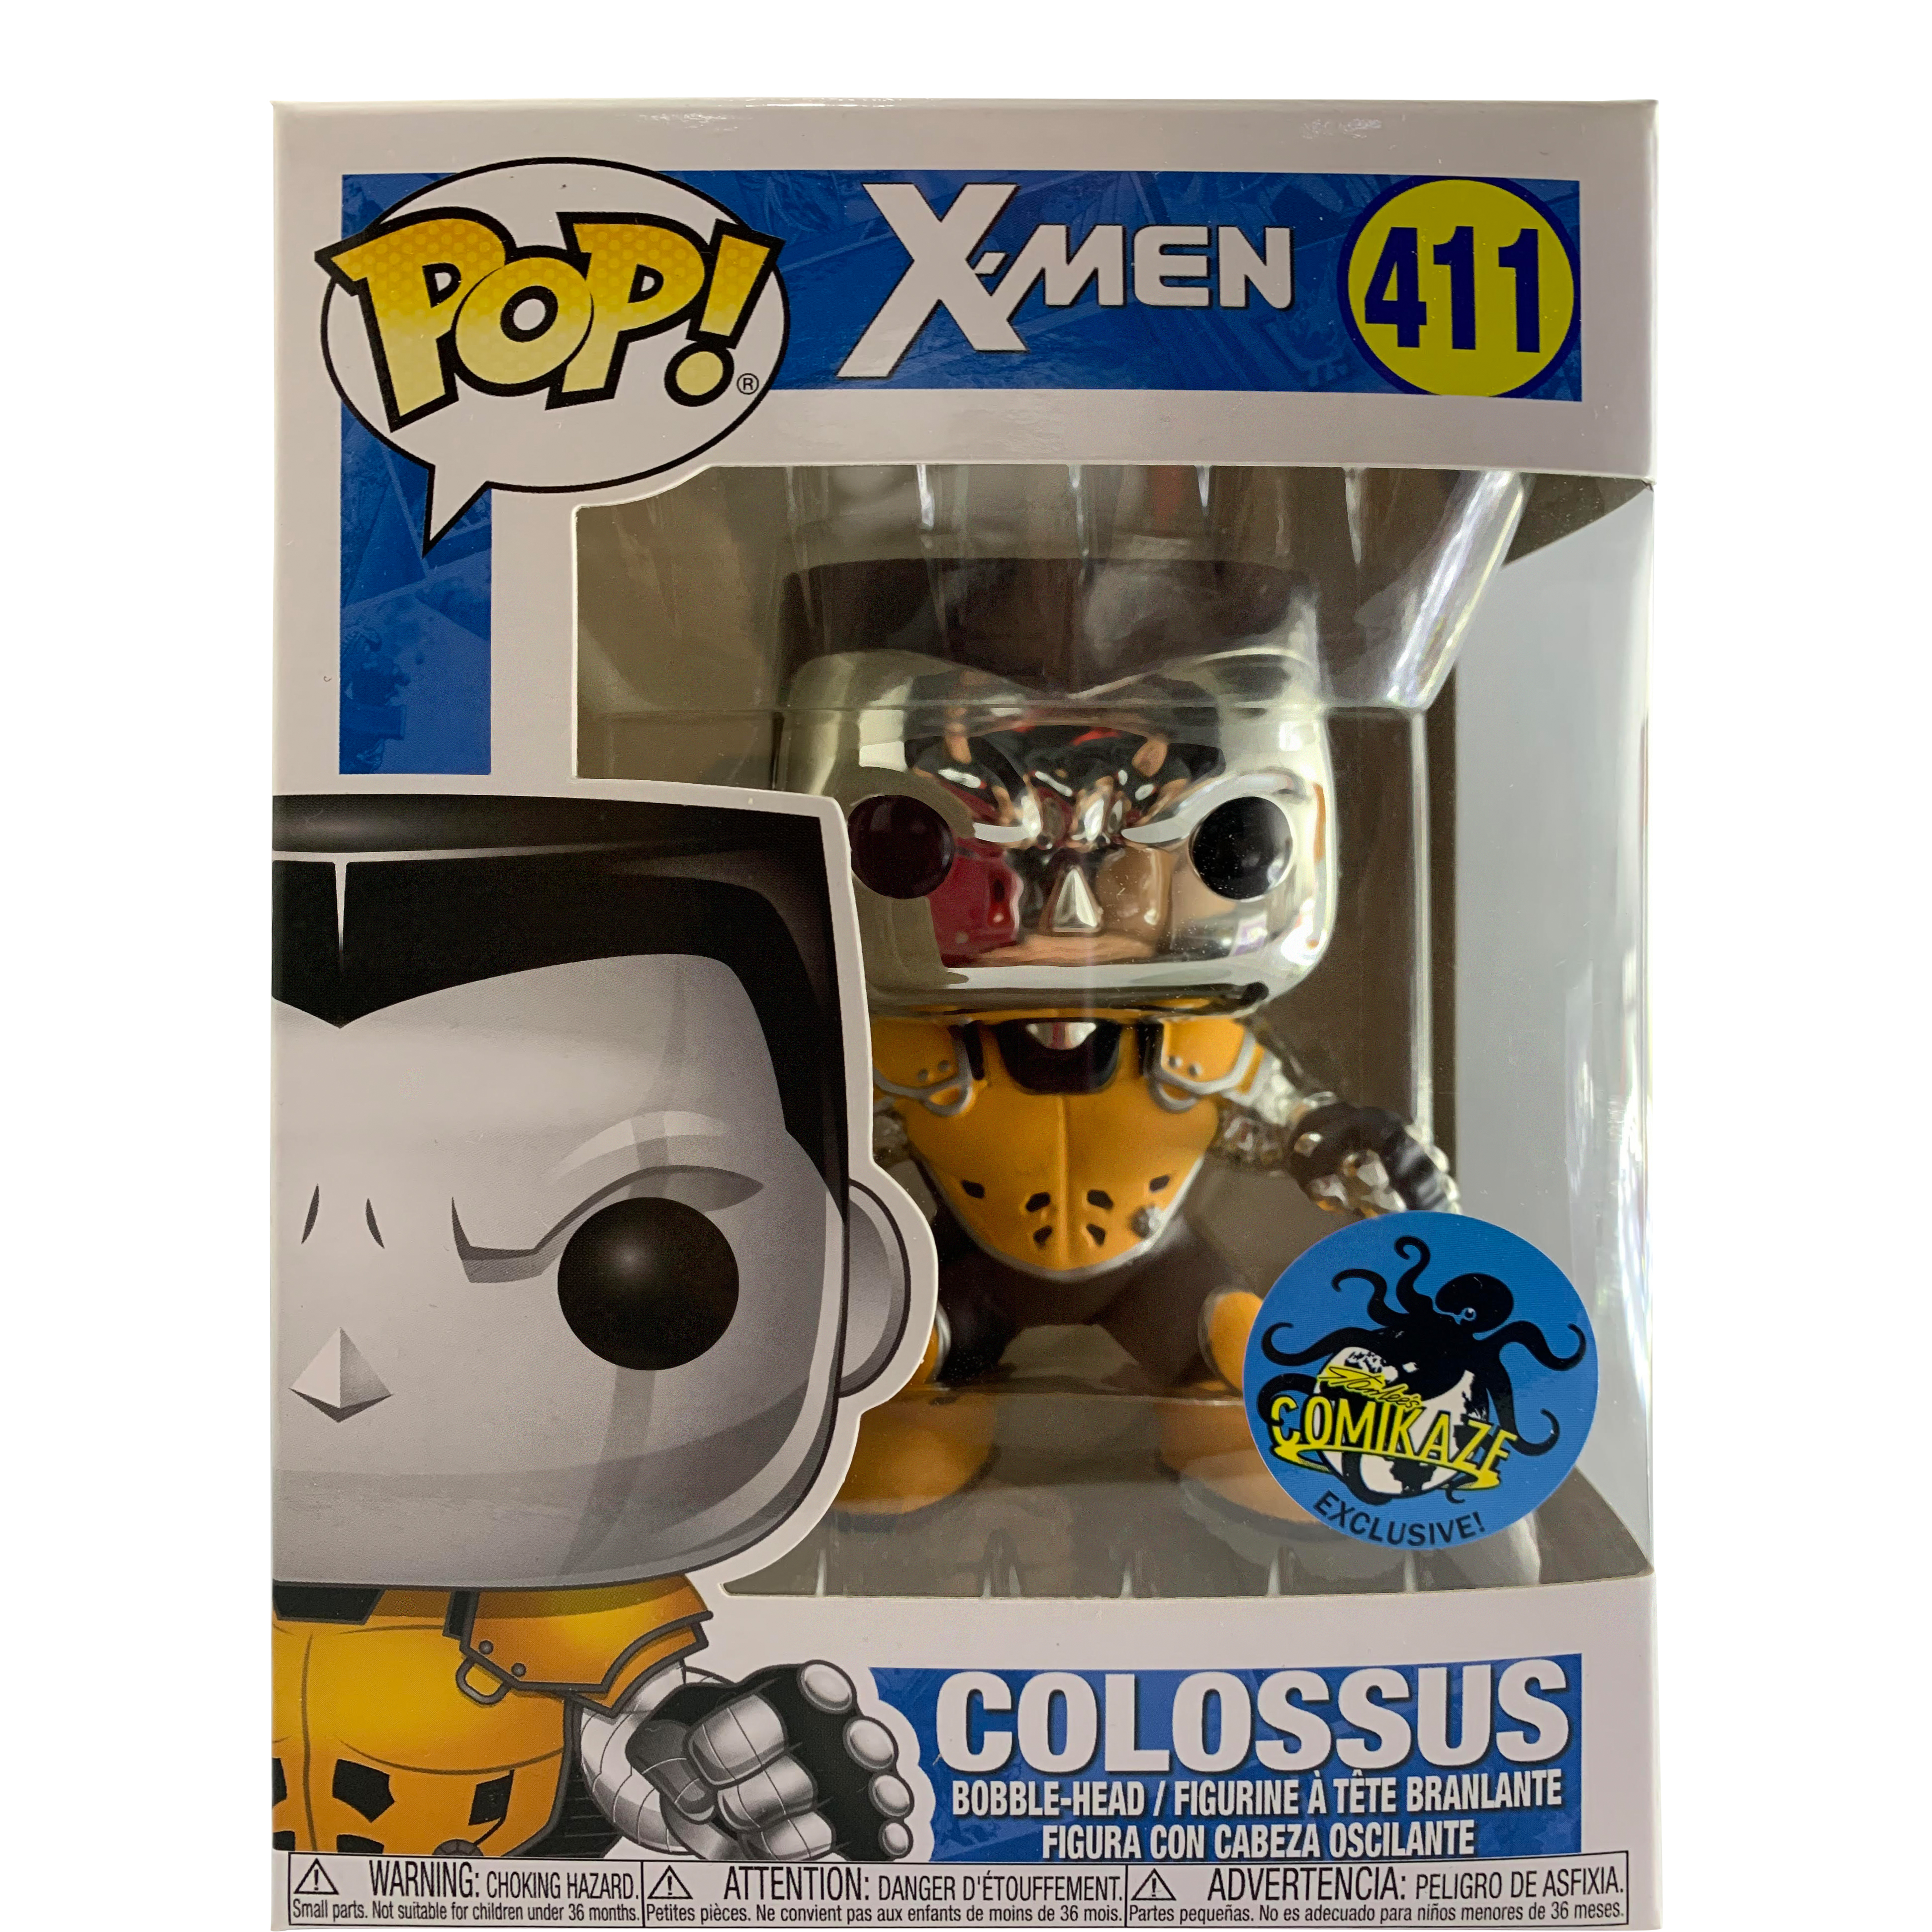 Funko Pop! X-Men Colossus Comikaze Exclusive Bobble-Head Figure 